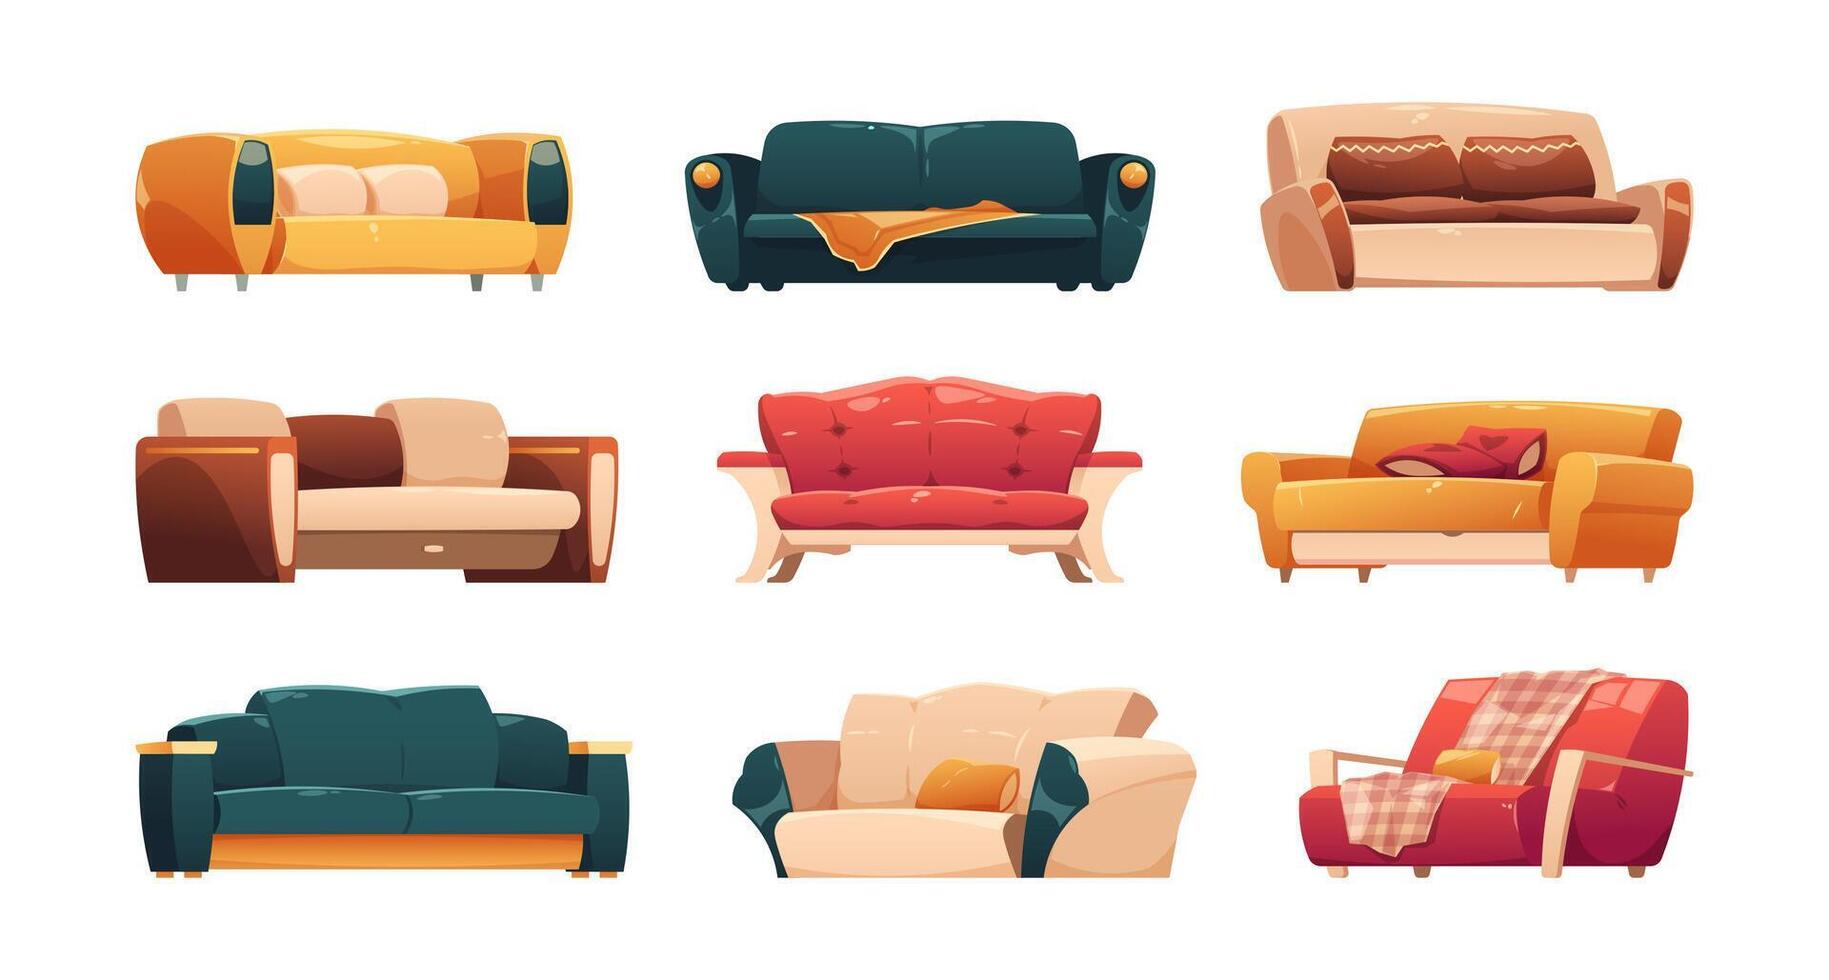 tekenfilm couches en banken. modern comfortabel fauteuil en sofa voor huis en kantoor, knus lounge meubilair voor leven kamer interieur. vector geïsoleerd reeks